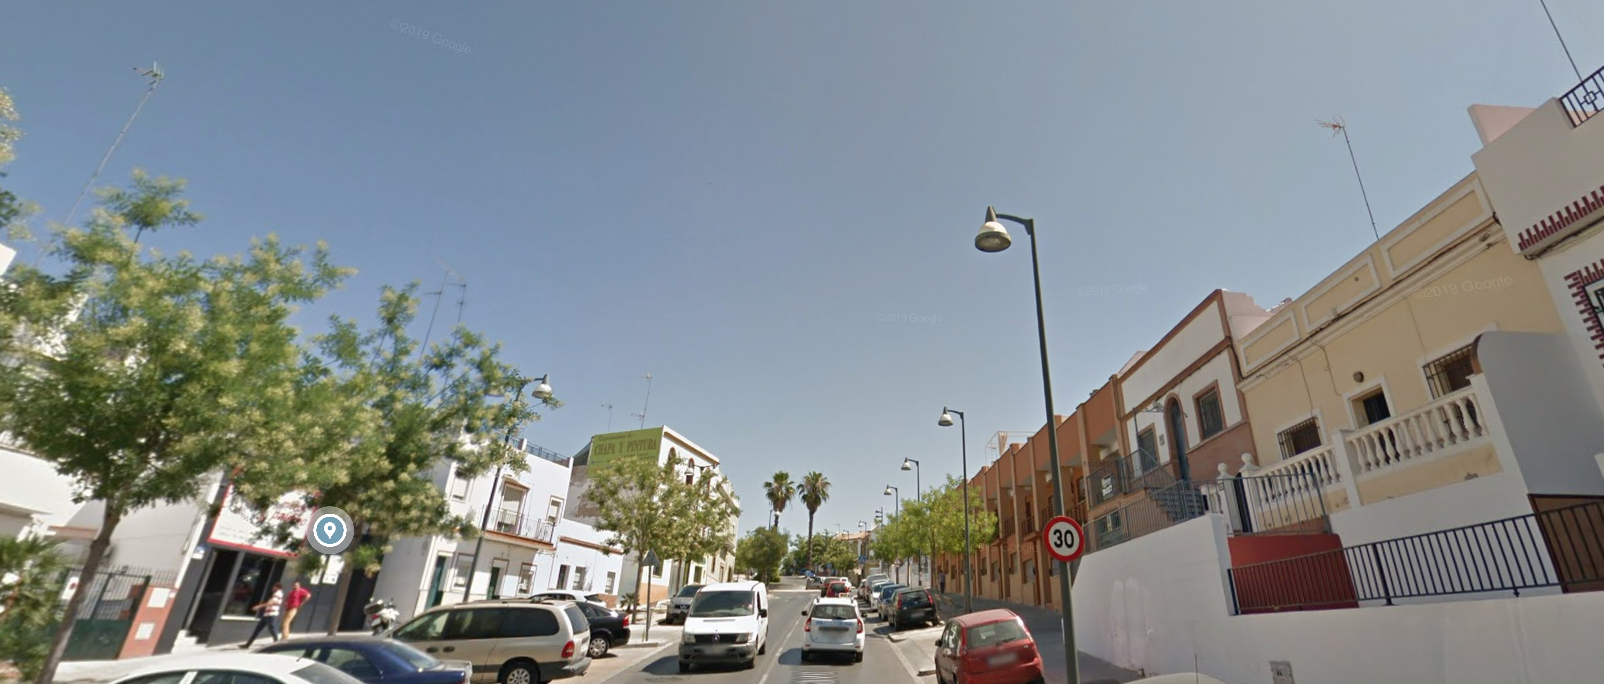 La calle Duquesa de Talavera de Alcalá de Guadaíra, donde empezó la persecución, en una imagen de Google Maps.